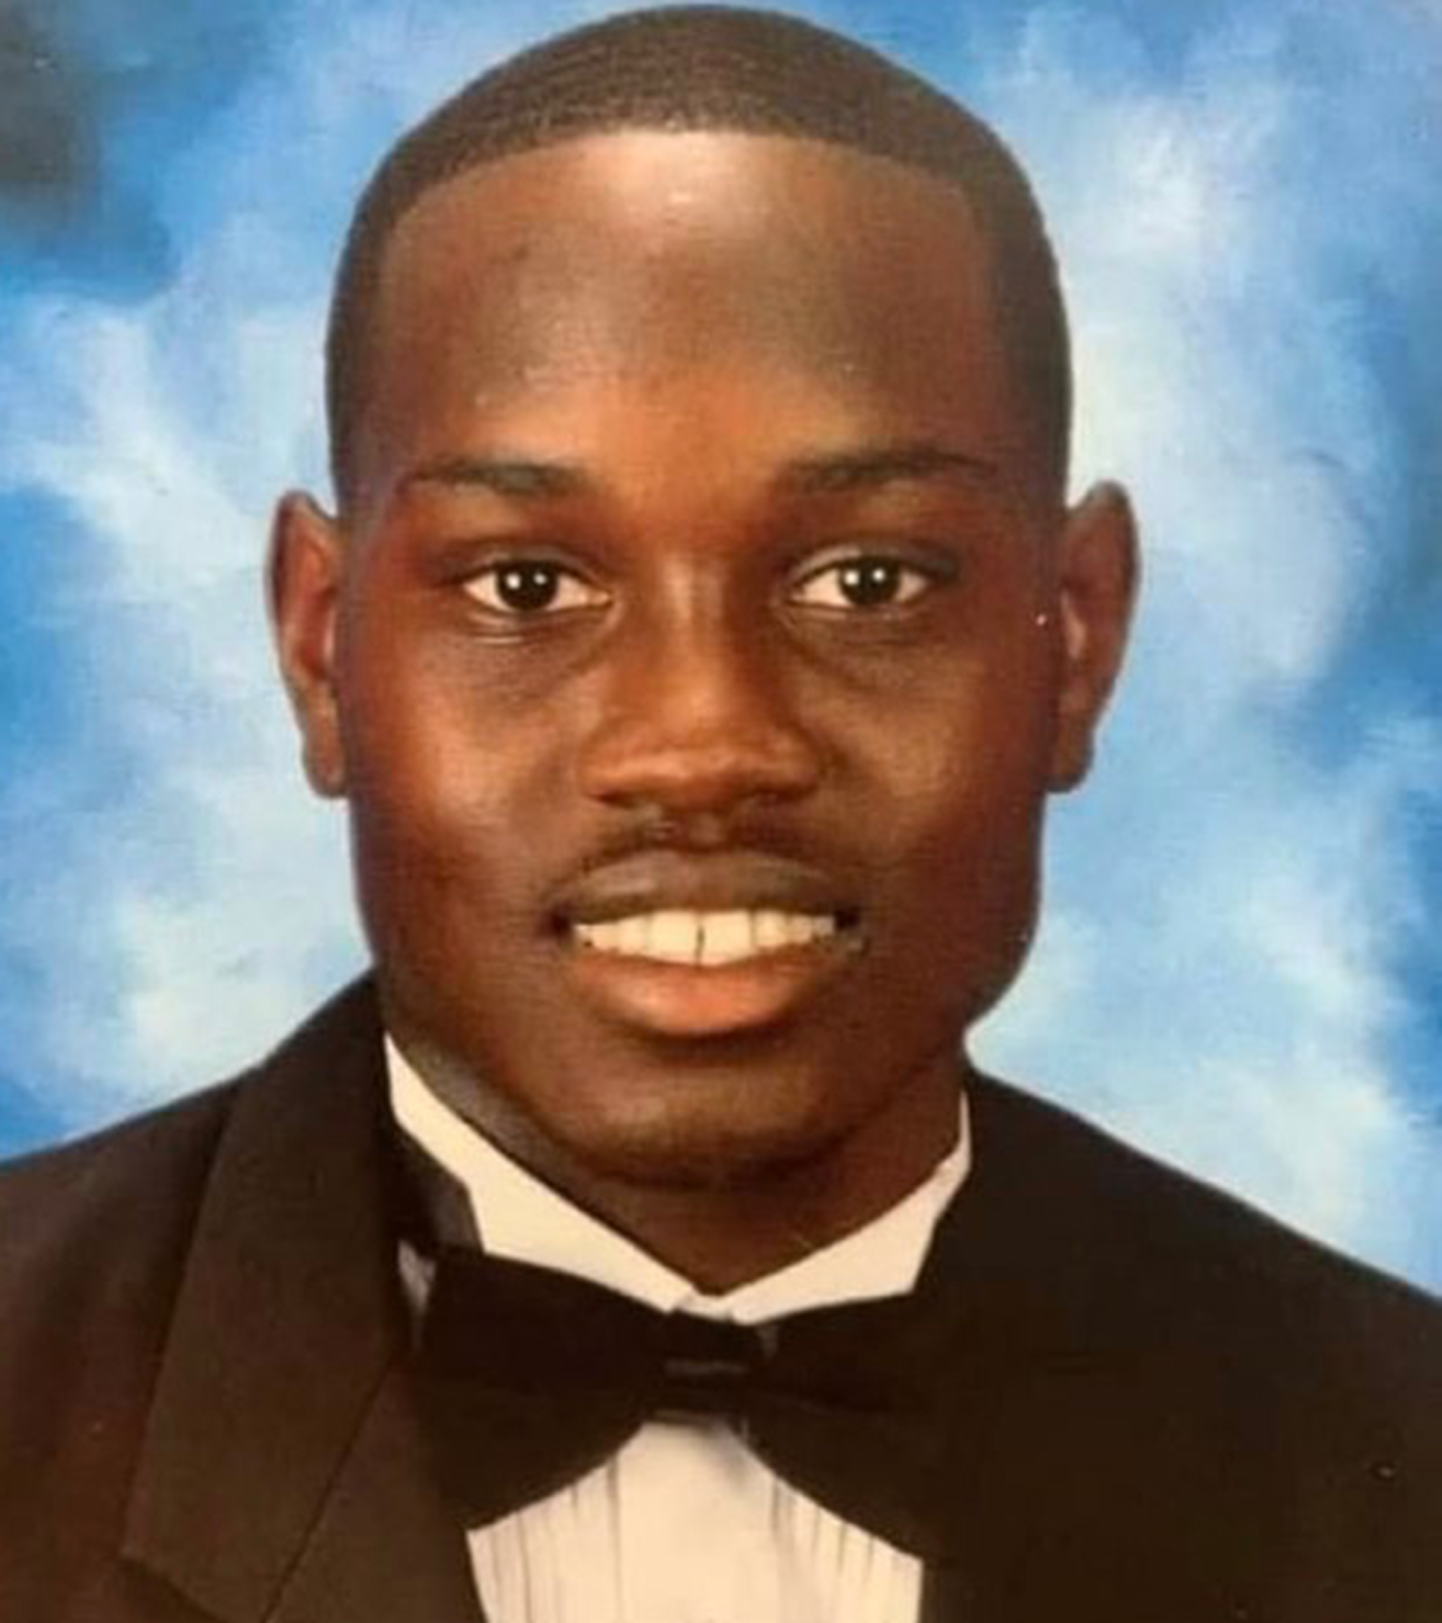 25-aastane Ahmaud Arbery tapeti 23. veebruaril kahe valge mehe poolt ja tema surm on tõstatanud USAs teravalt taas rassiteema esile.